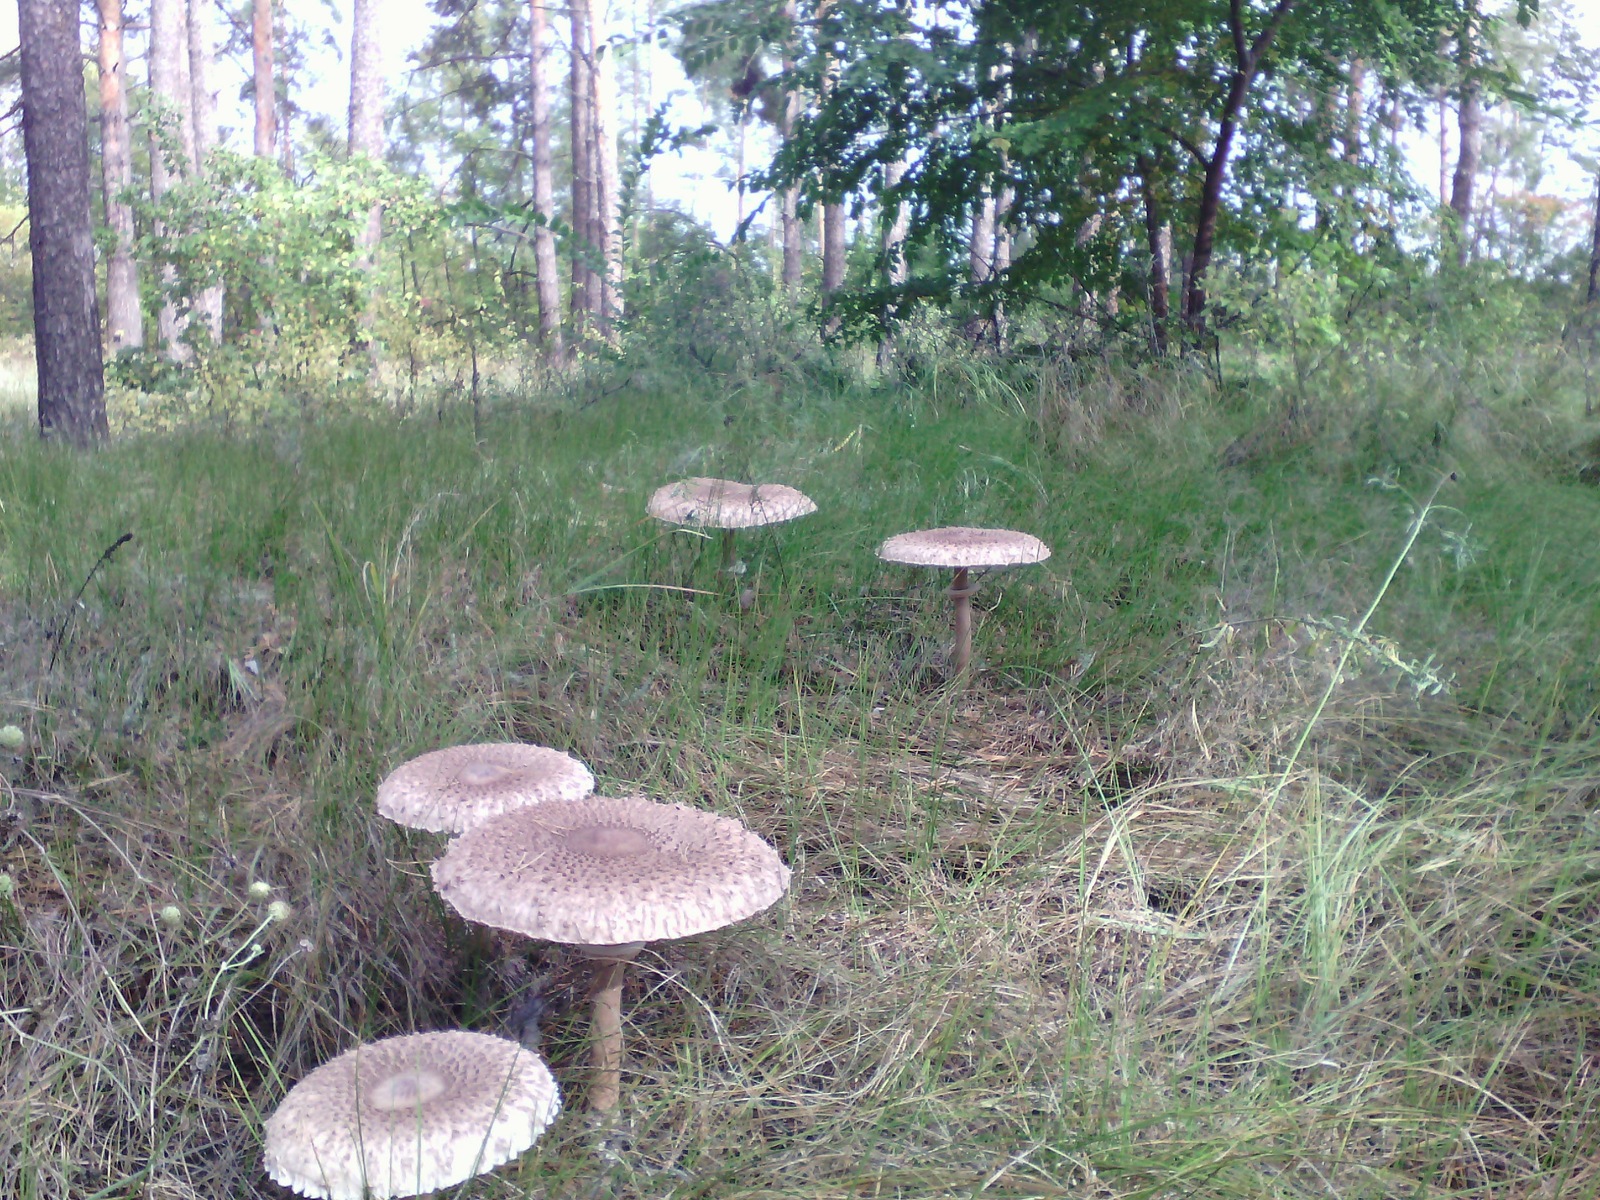 For mushrooms? - More, Toadstool, Mushrooms, My